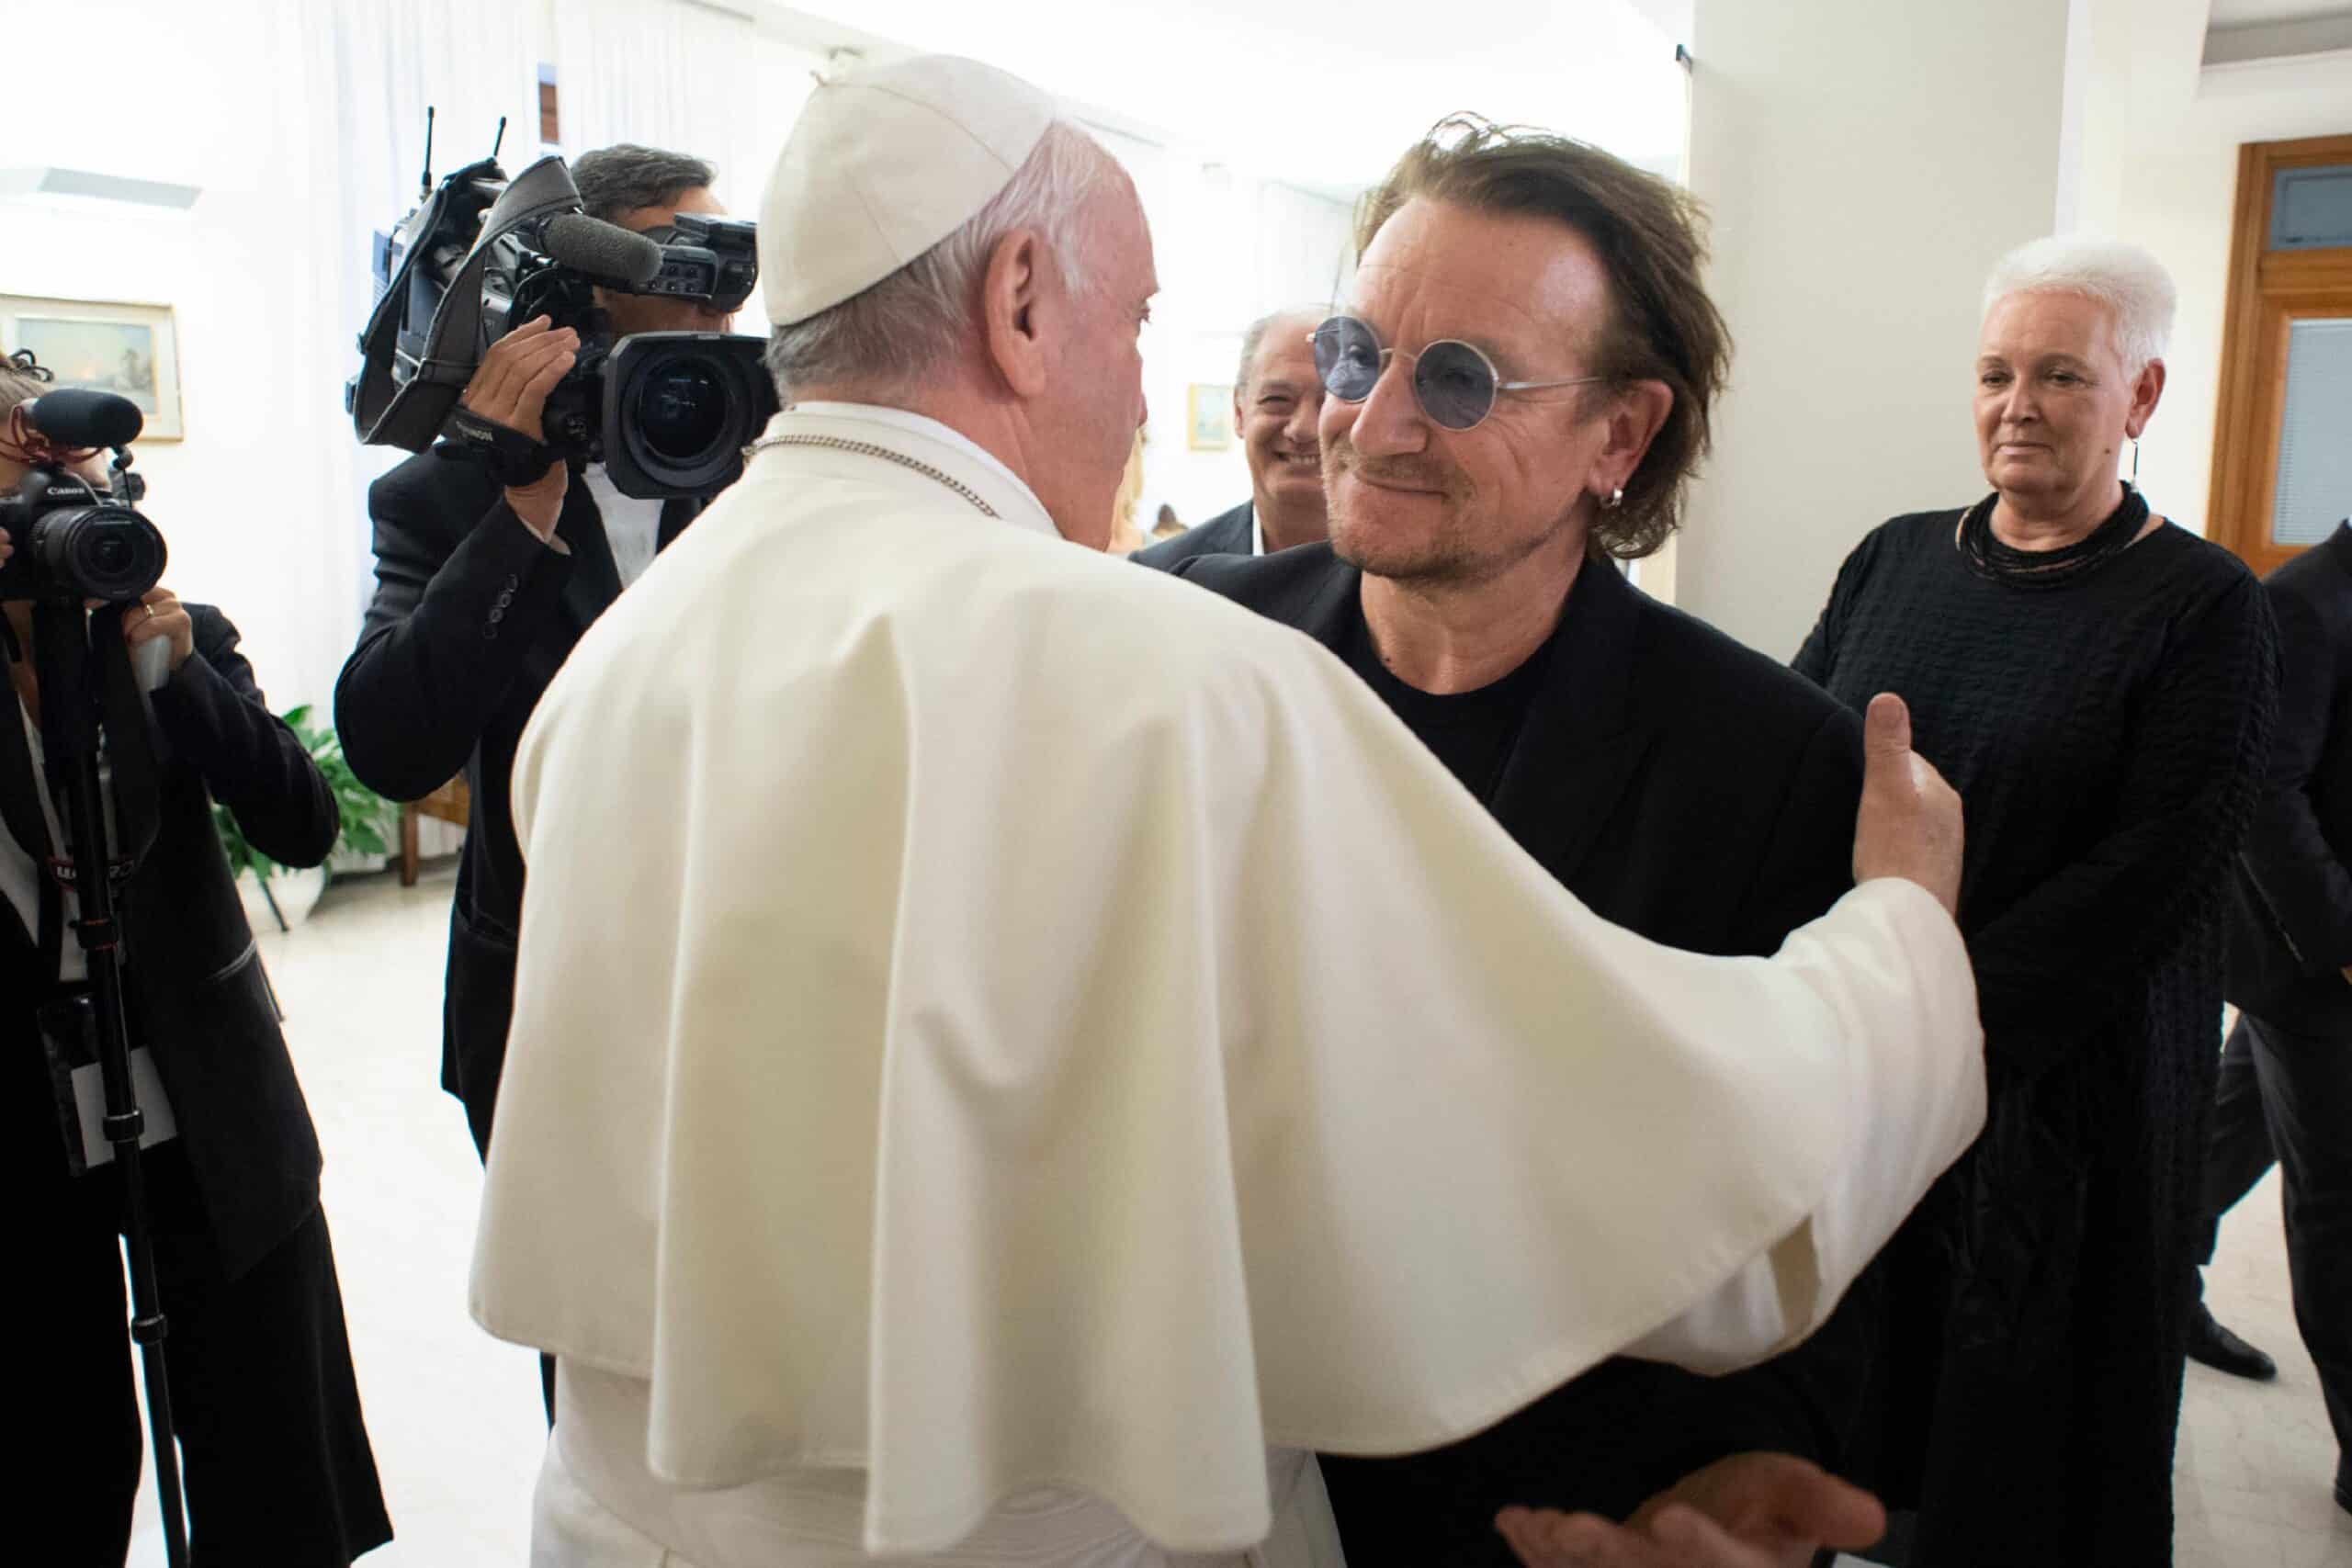 Fotos: 6 Cantantes famosos que han visitado al Papa Francisco. ¿Los conoces?